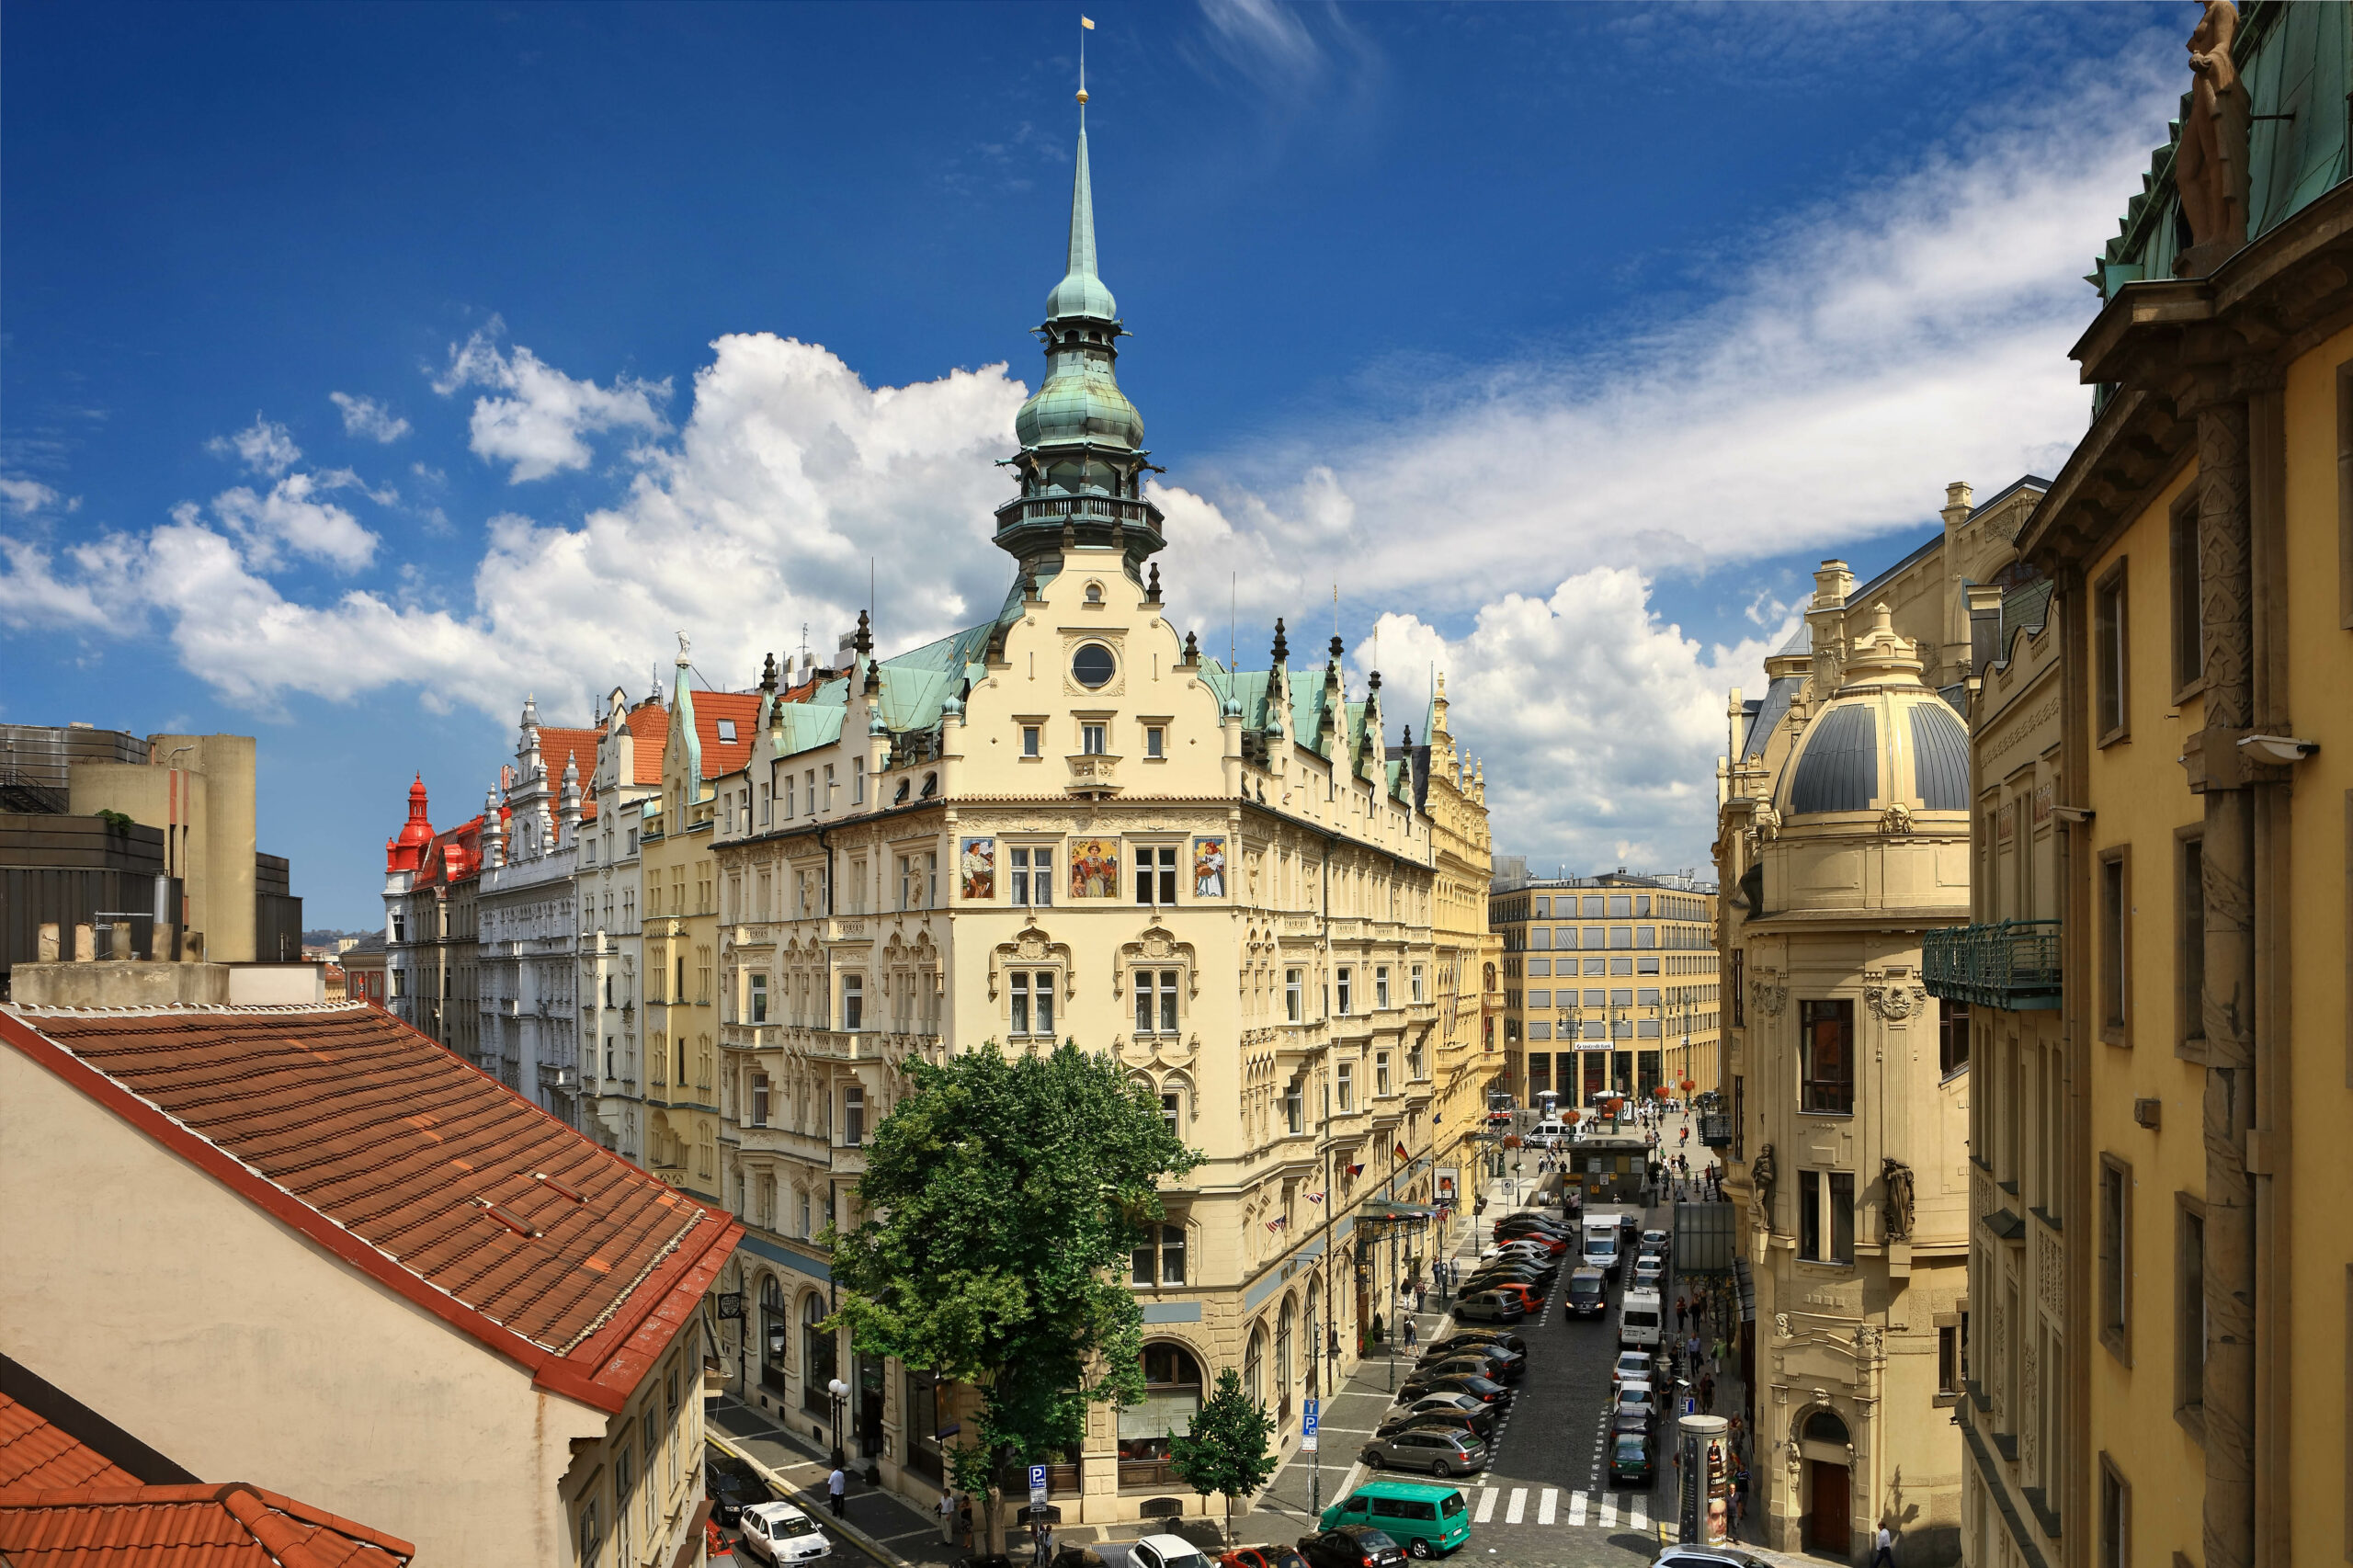 Hotel in Prague